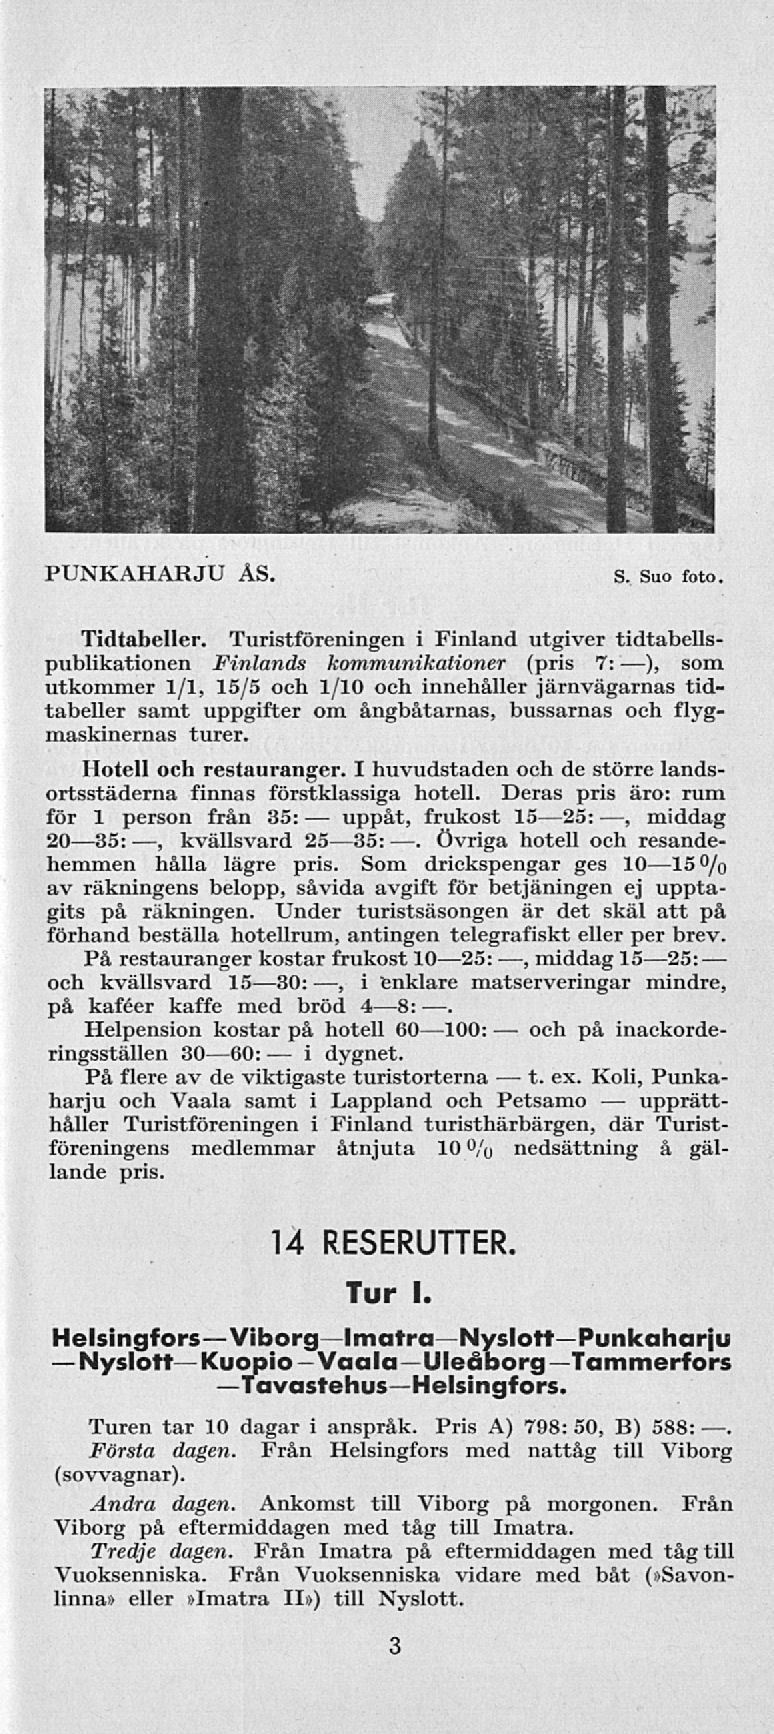 NyslottKuopio-Vaala Viborglmatra uppåt, Övriga och t. PUNKAHARJU AS. S. Suo foto. Tidtabeller.